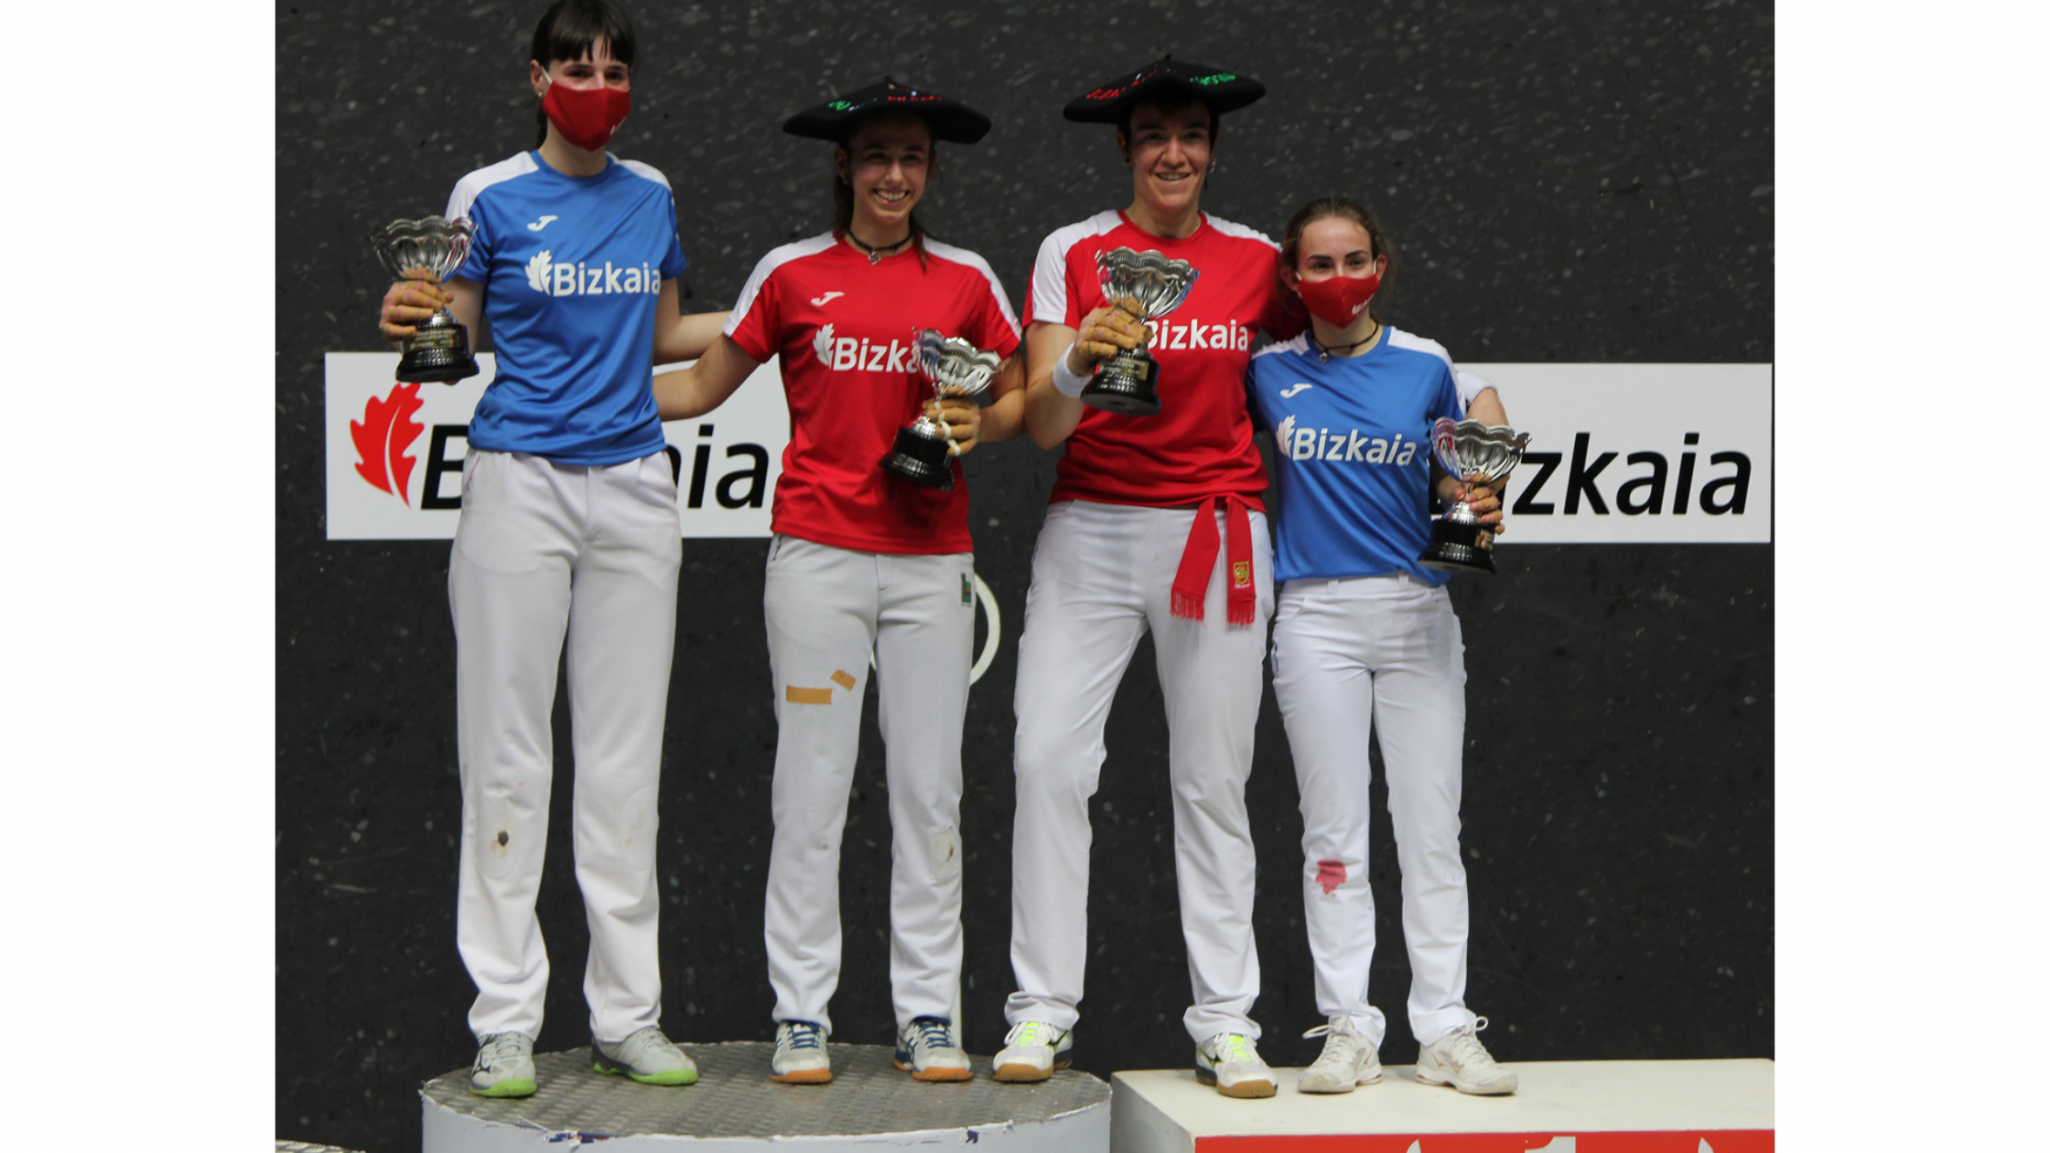 Leire Garai y Maite Ruiz de Larramendi se proclaman ganadoras del III Torneo Bizkaia femenino de pelota a mano